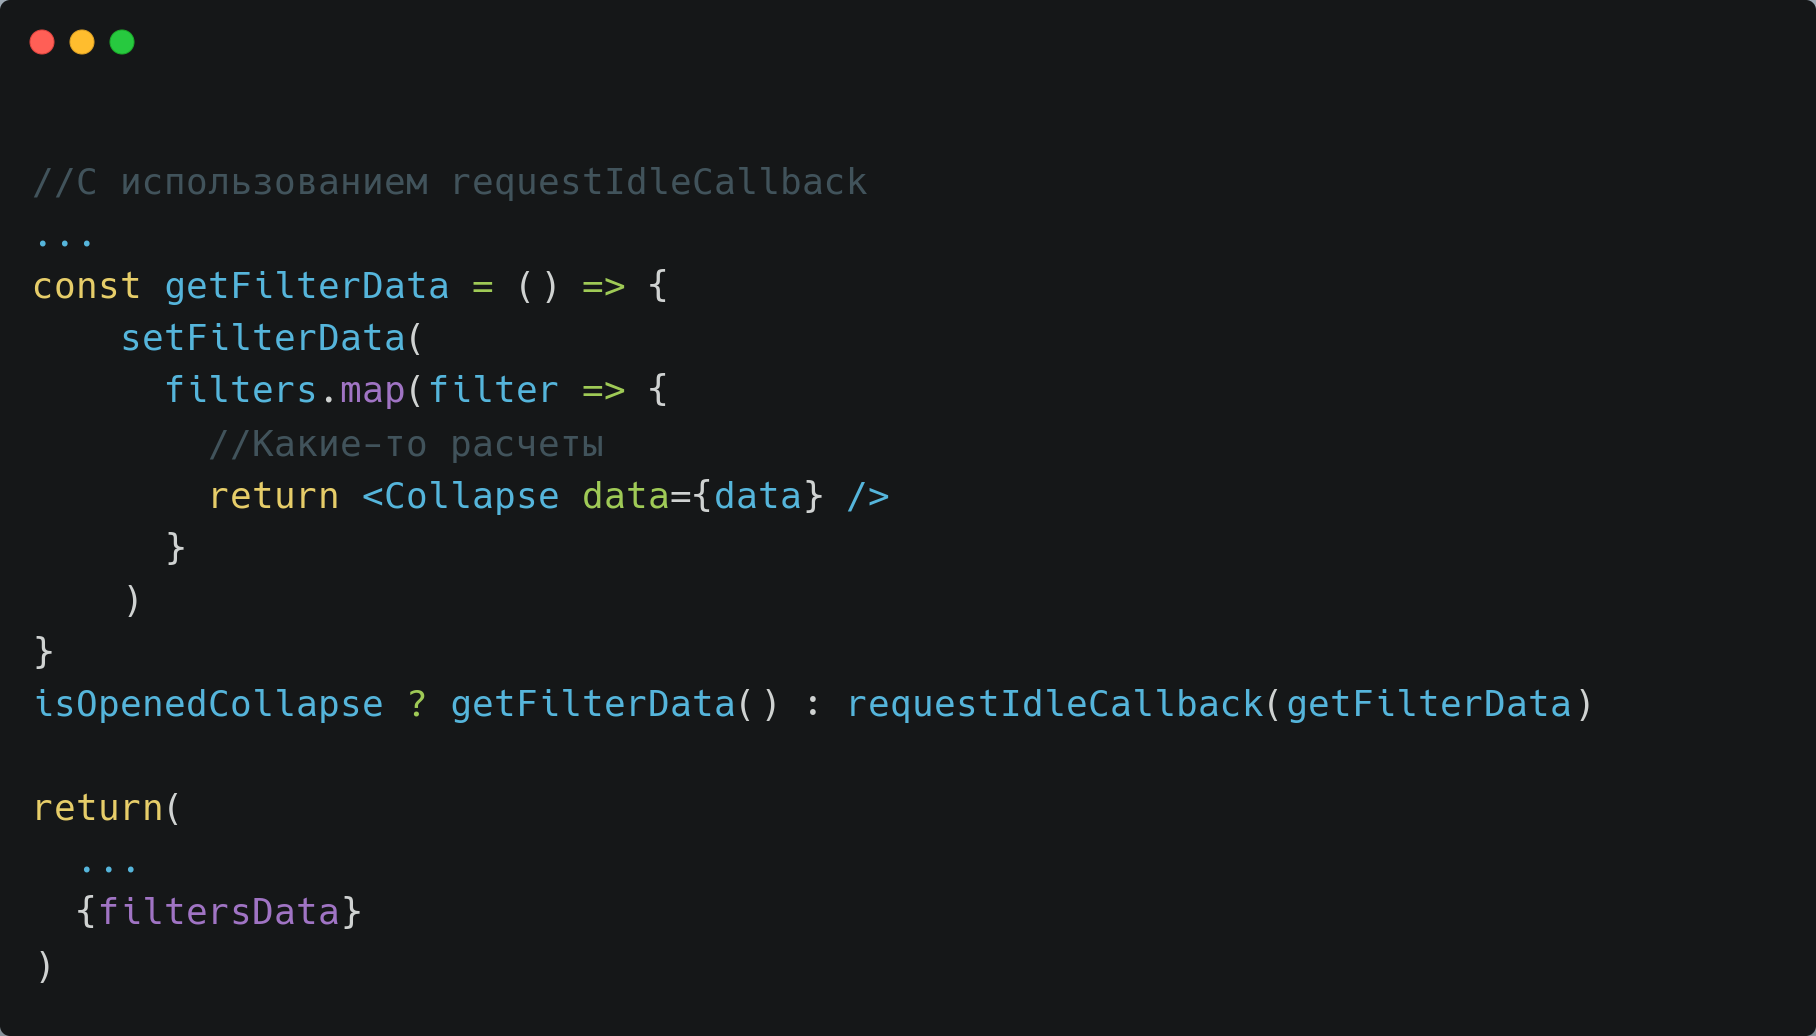 Упрощенный код с requestIdleCallback